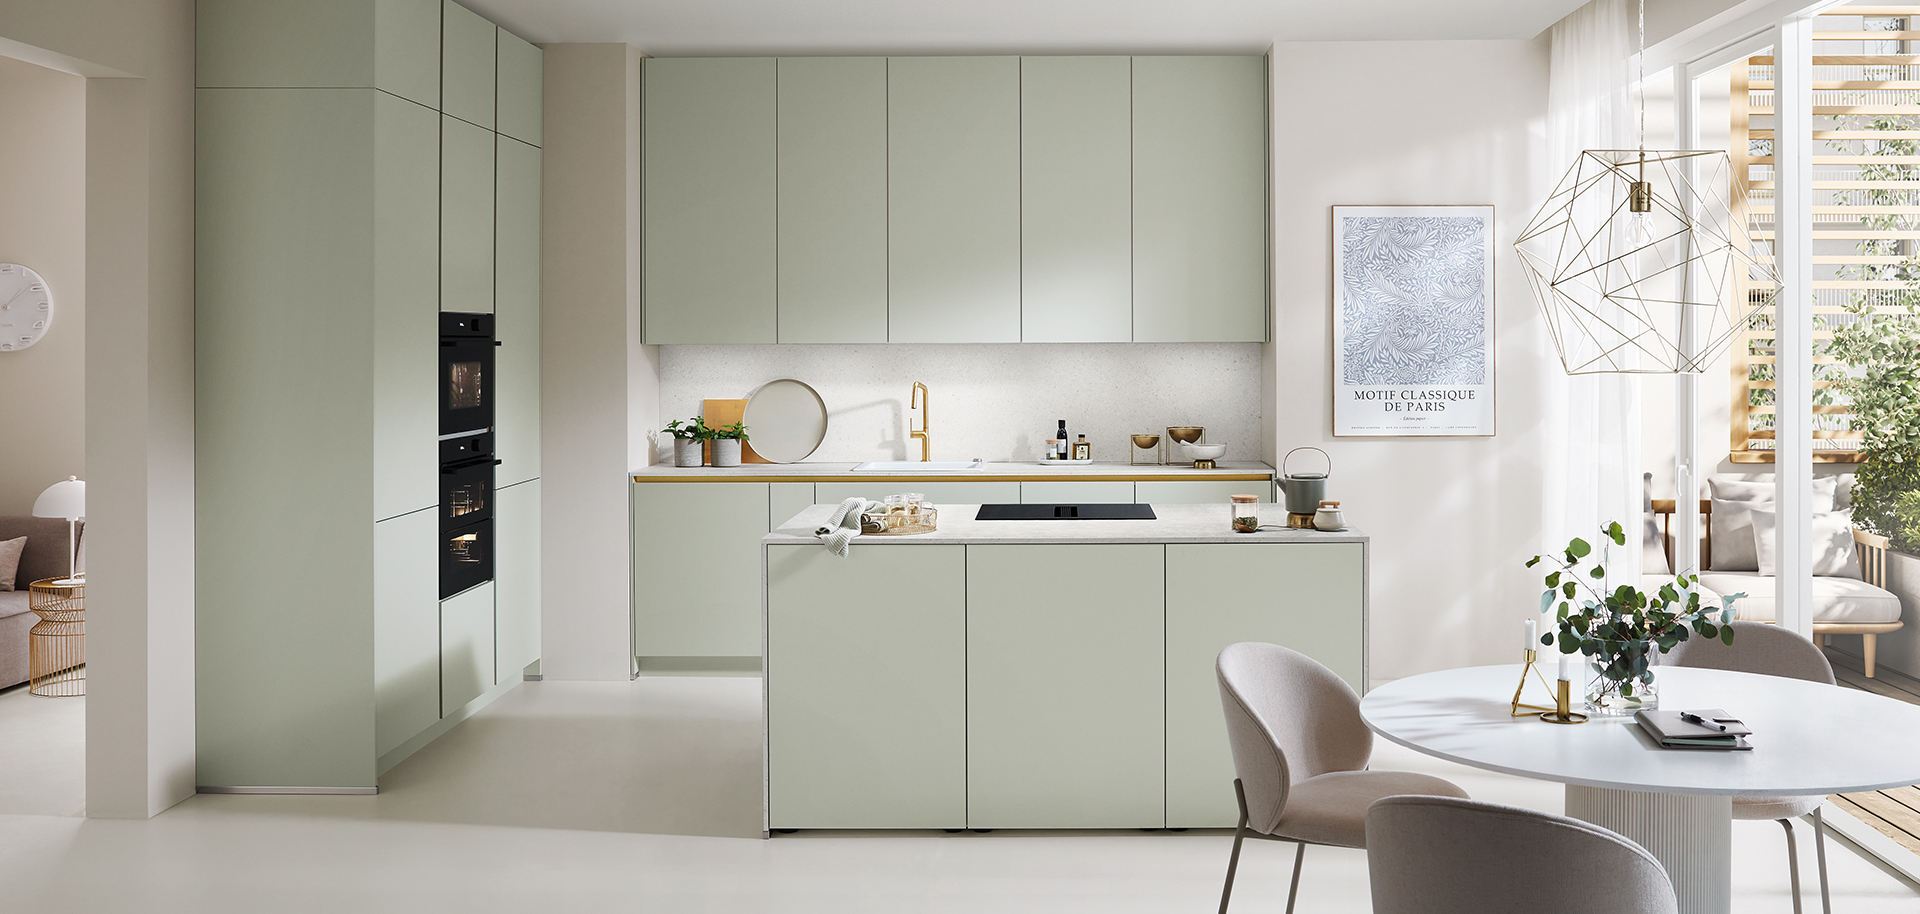 Cocina moderna con gabinetes de color verde pastel, electrodomésticos integrados y un acogedor comedor que muestra un diseño minimalista y una atmósfera luminosa y aireada.